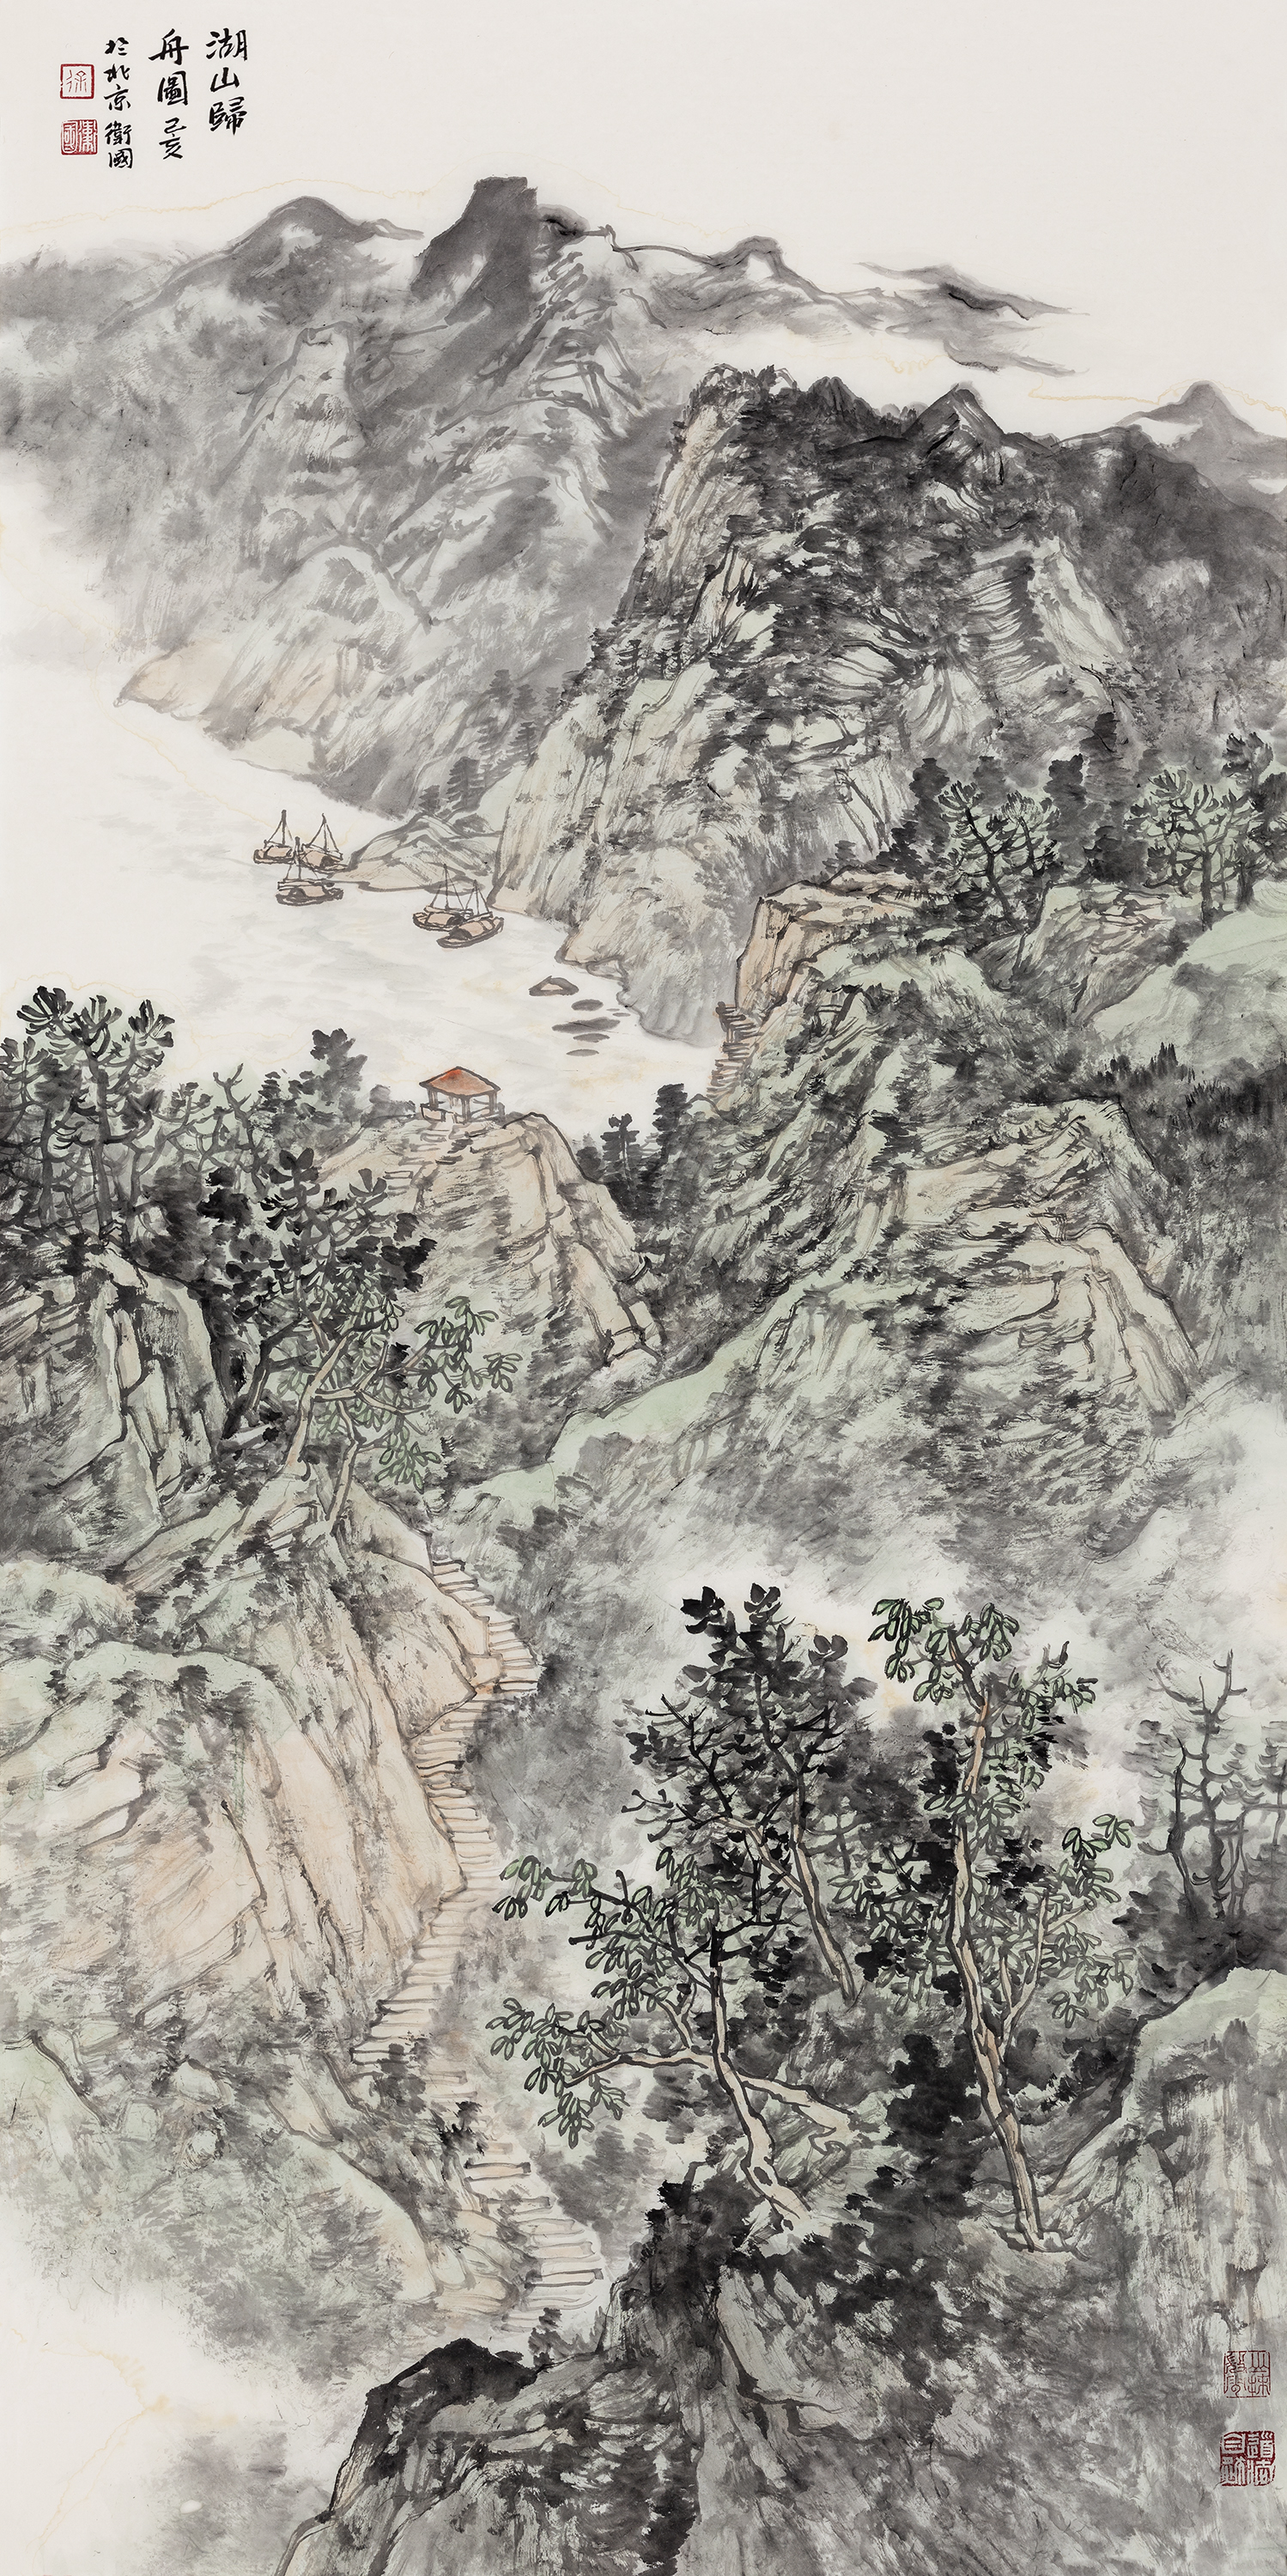 纵览徐卫国的山水画,无论是他笔下壮阔幽深的太行山脉,还是龙盘虎踞